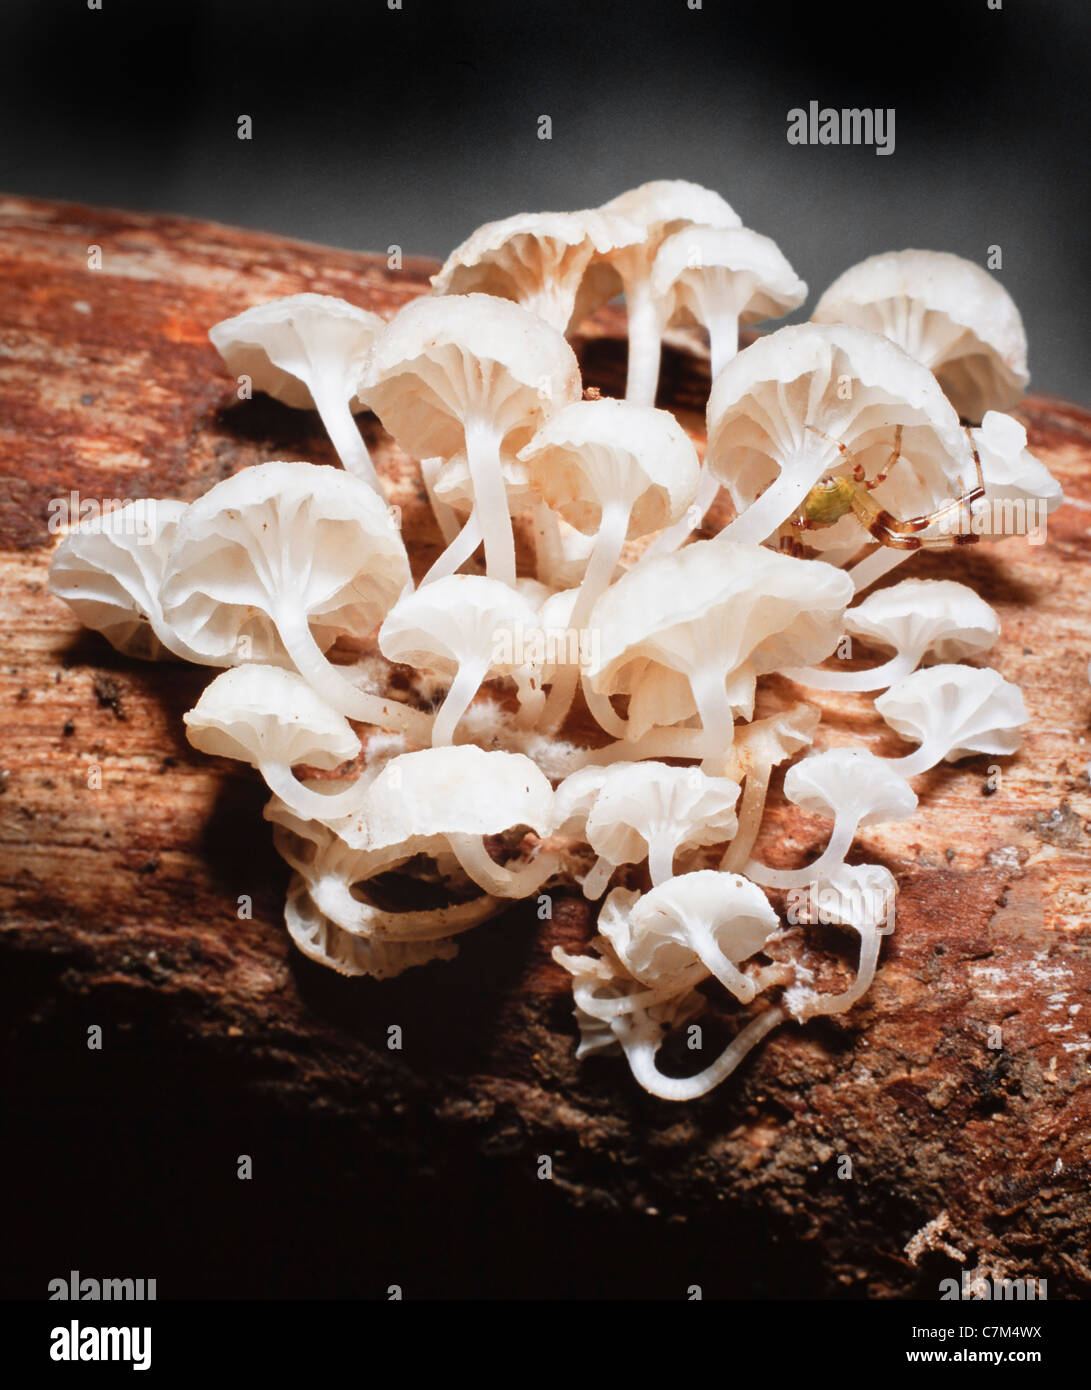 Huîtres tropicales comme les champignons qui poussent sur le sol forestier, Mulu National Park, Sarawak, Bornéo, Malaisie Orientale Banque D'Images